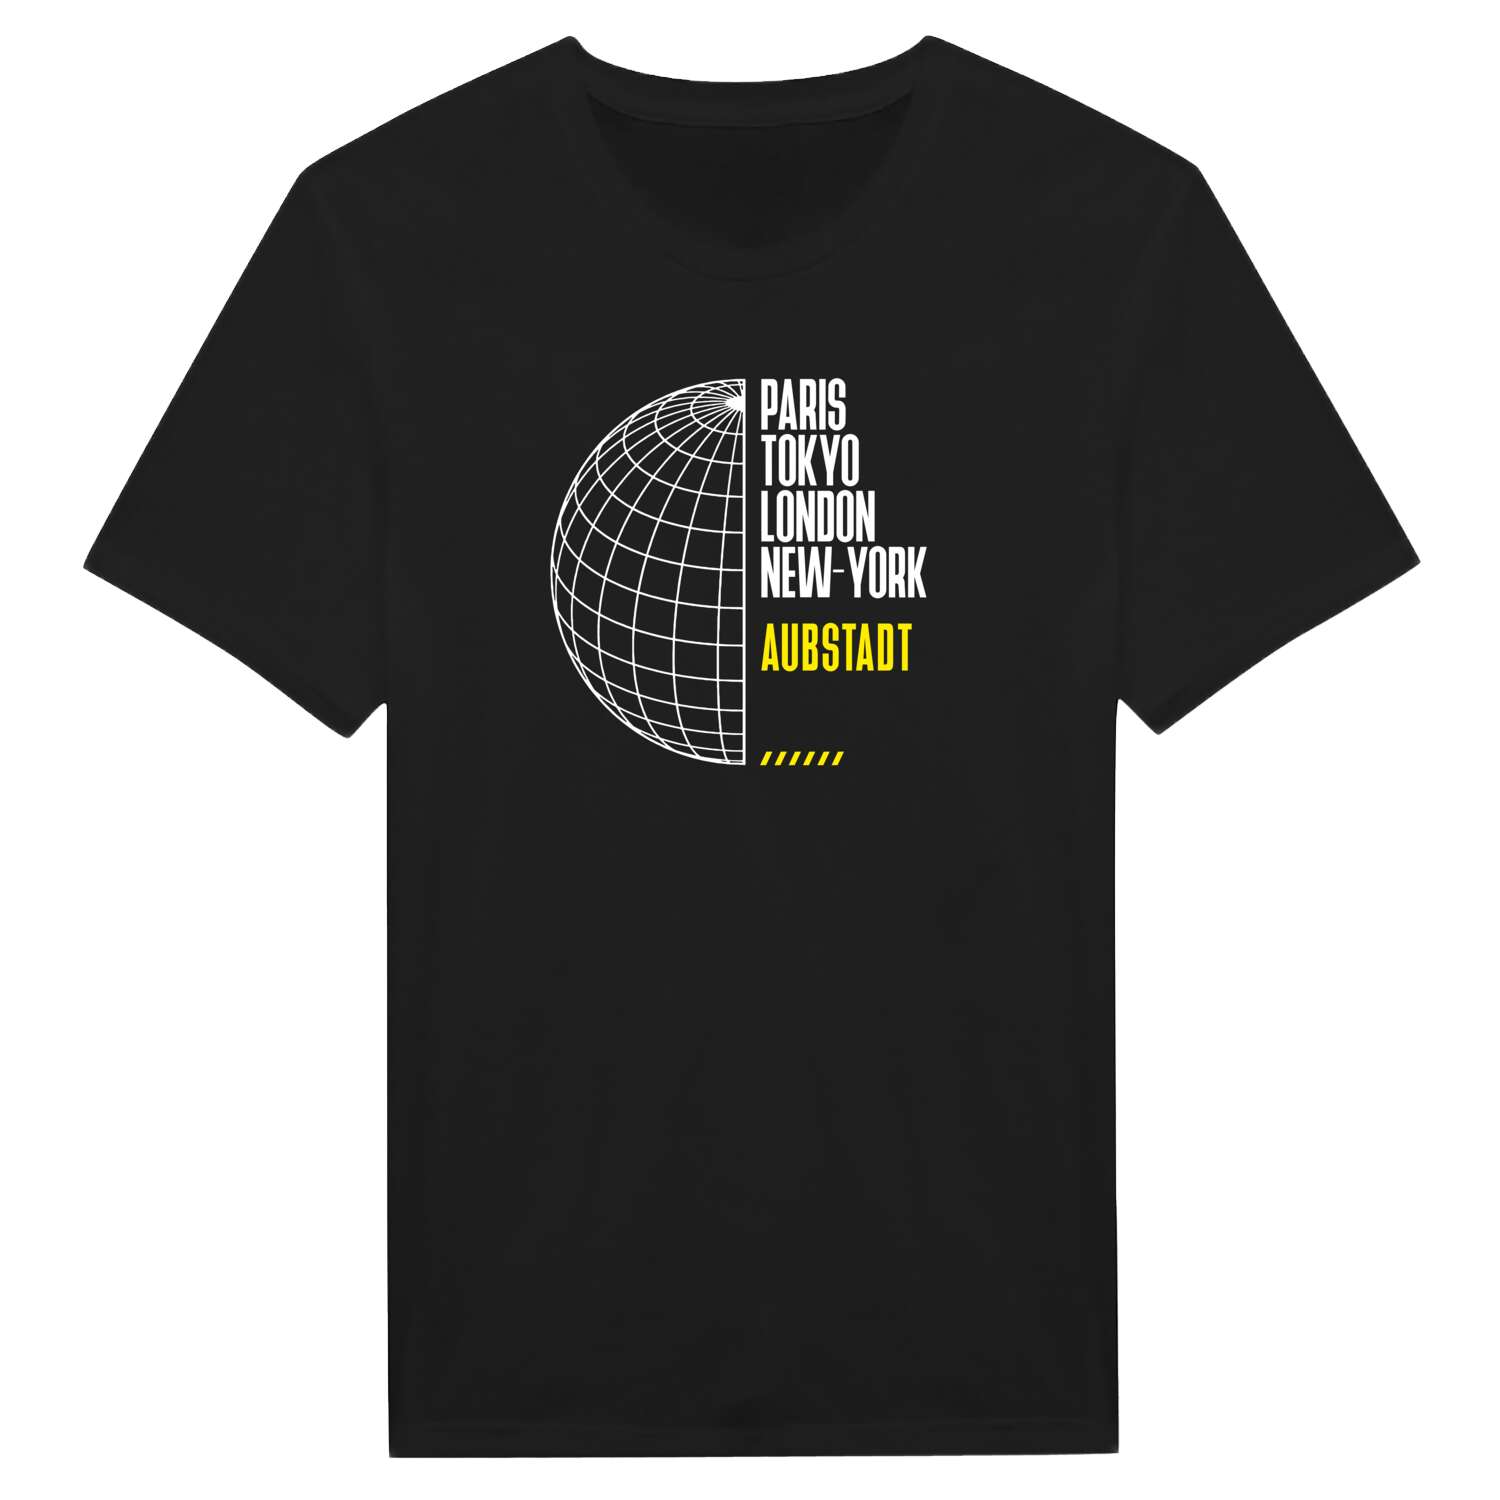 Aubstadt T-Shirt »Paris Tokyo London«